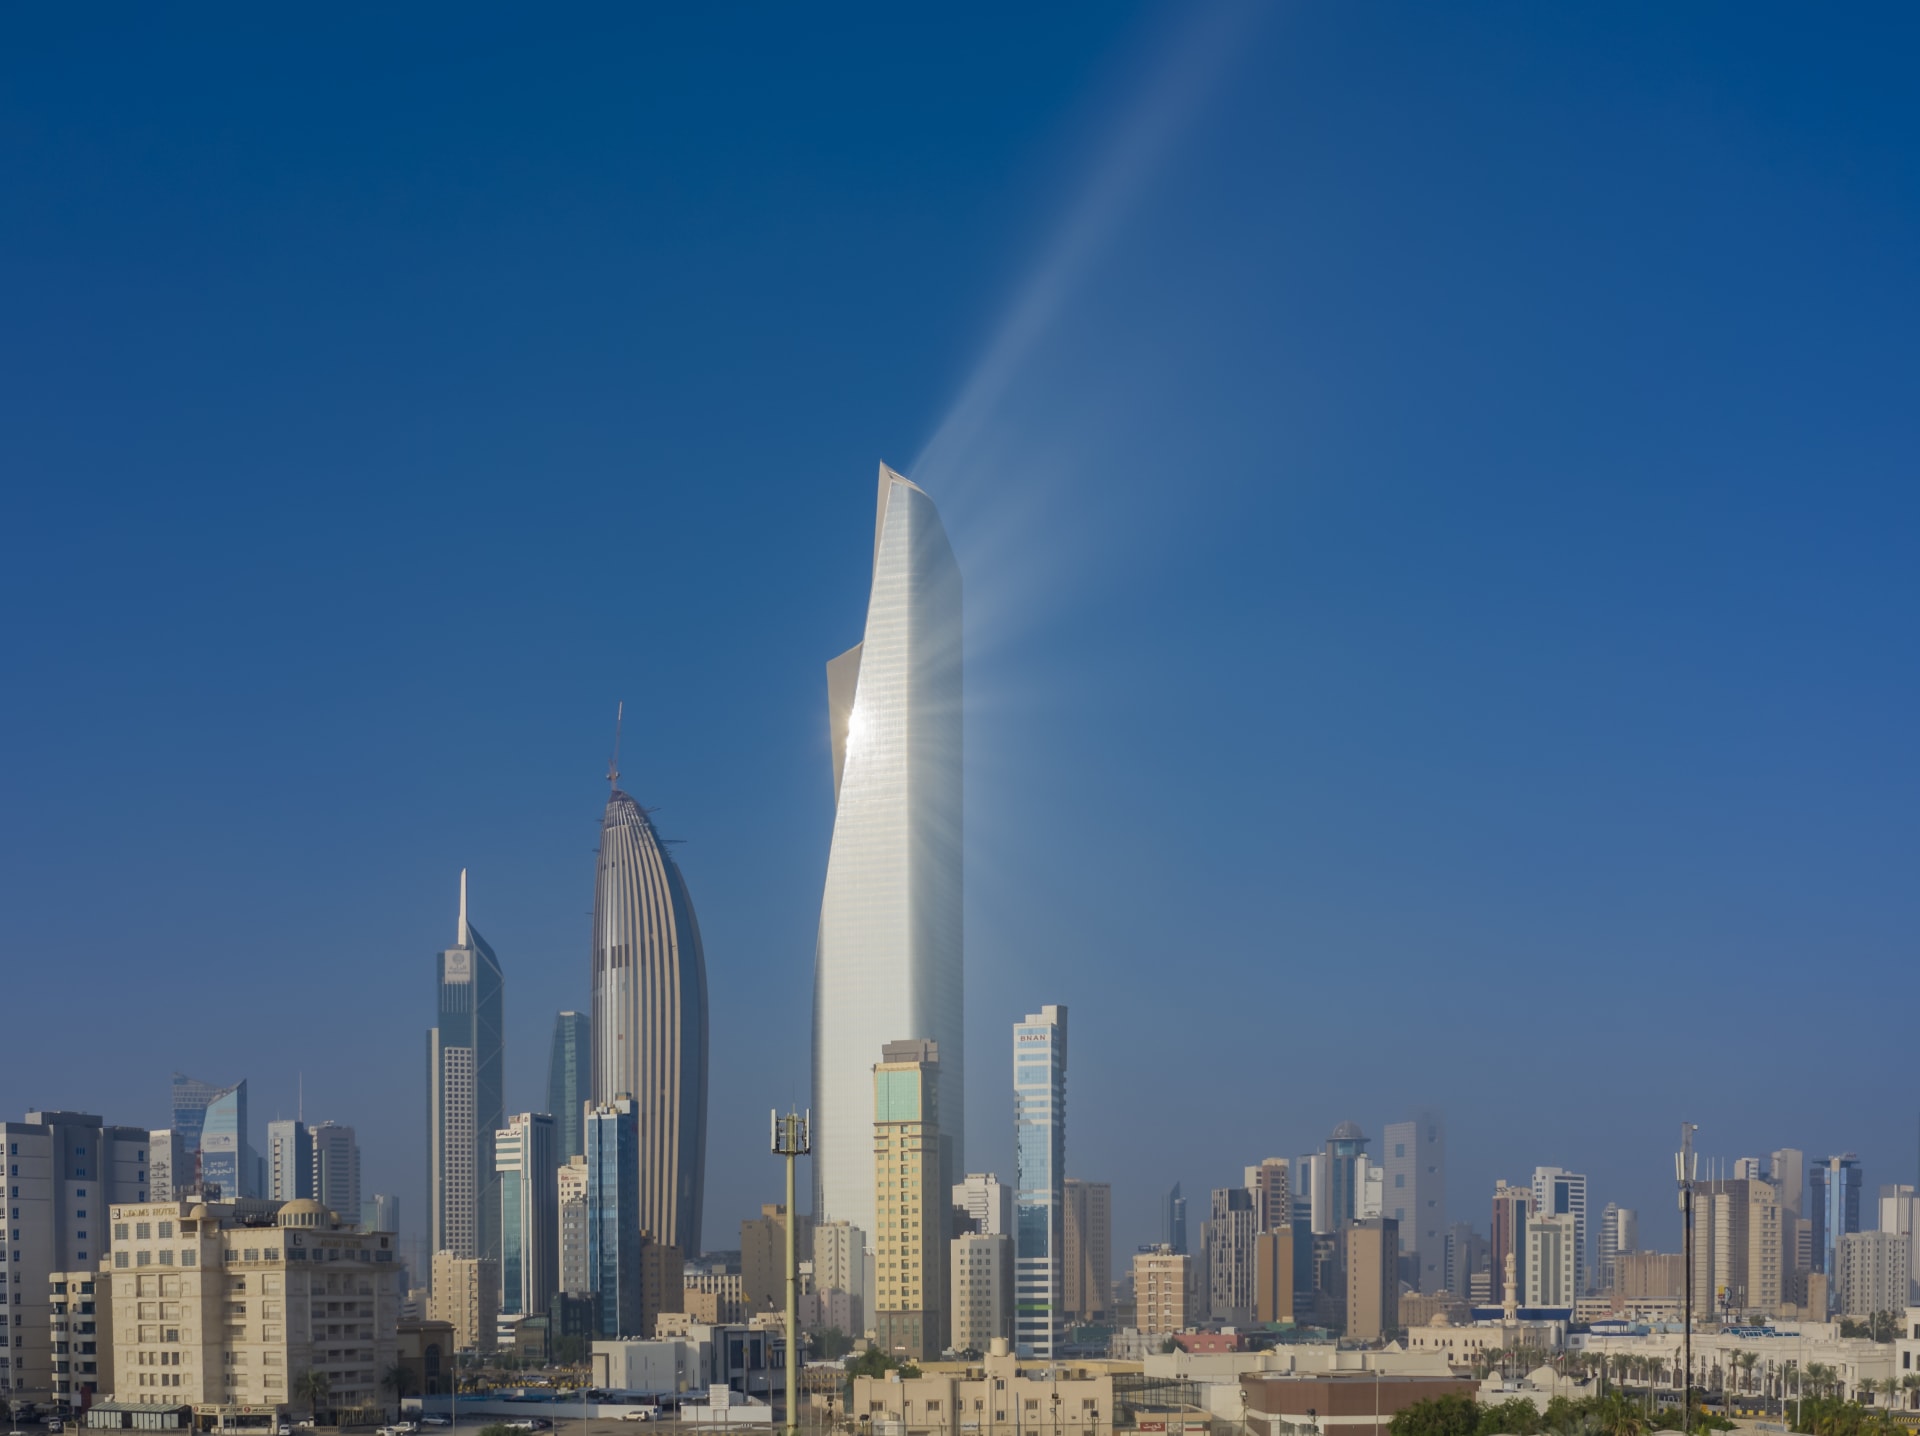 أعلى برج في الكويت كم طابق ومتى تم بناؤه